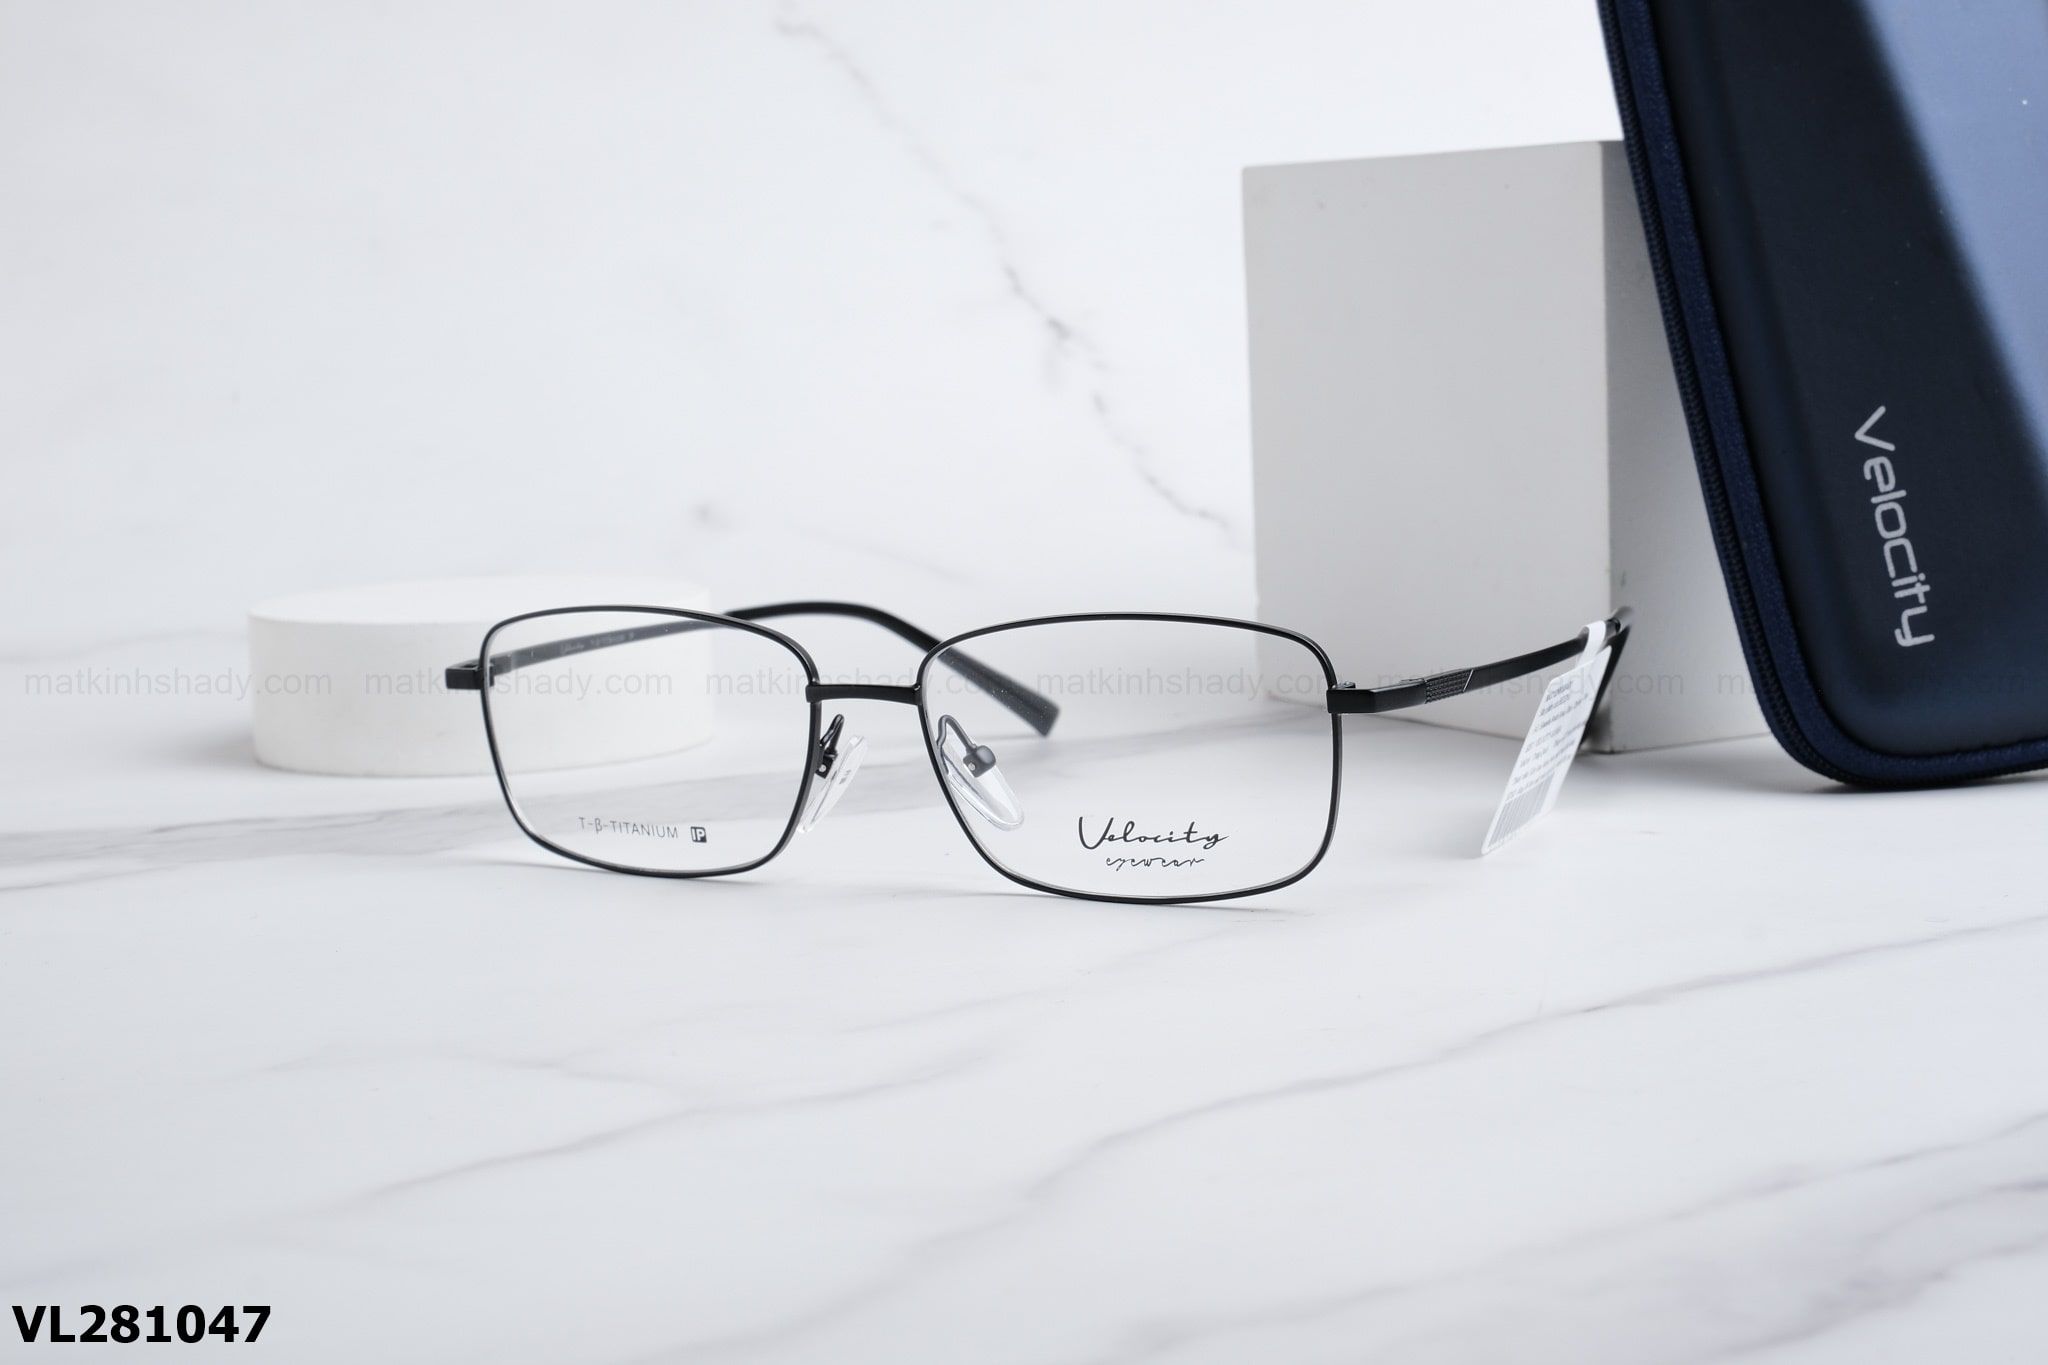  Velocity Eyewear - Glasses - VL281047 